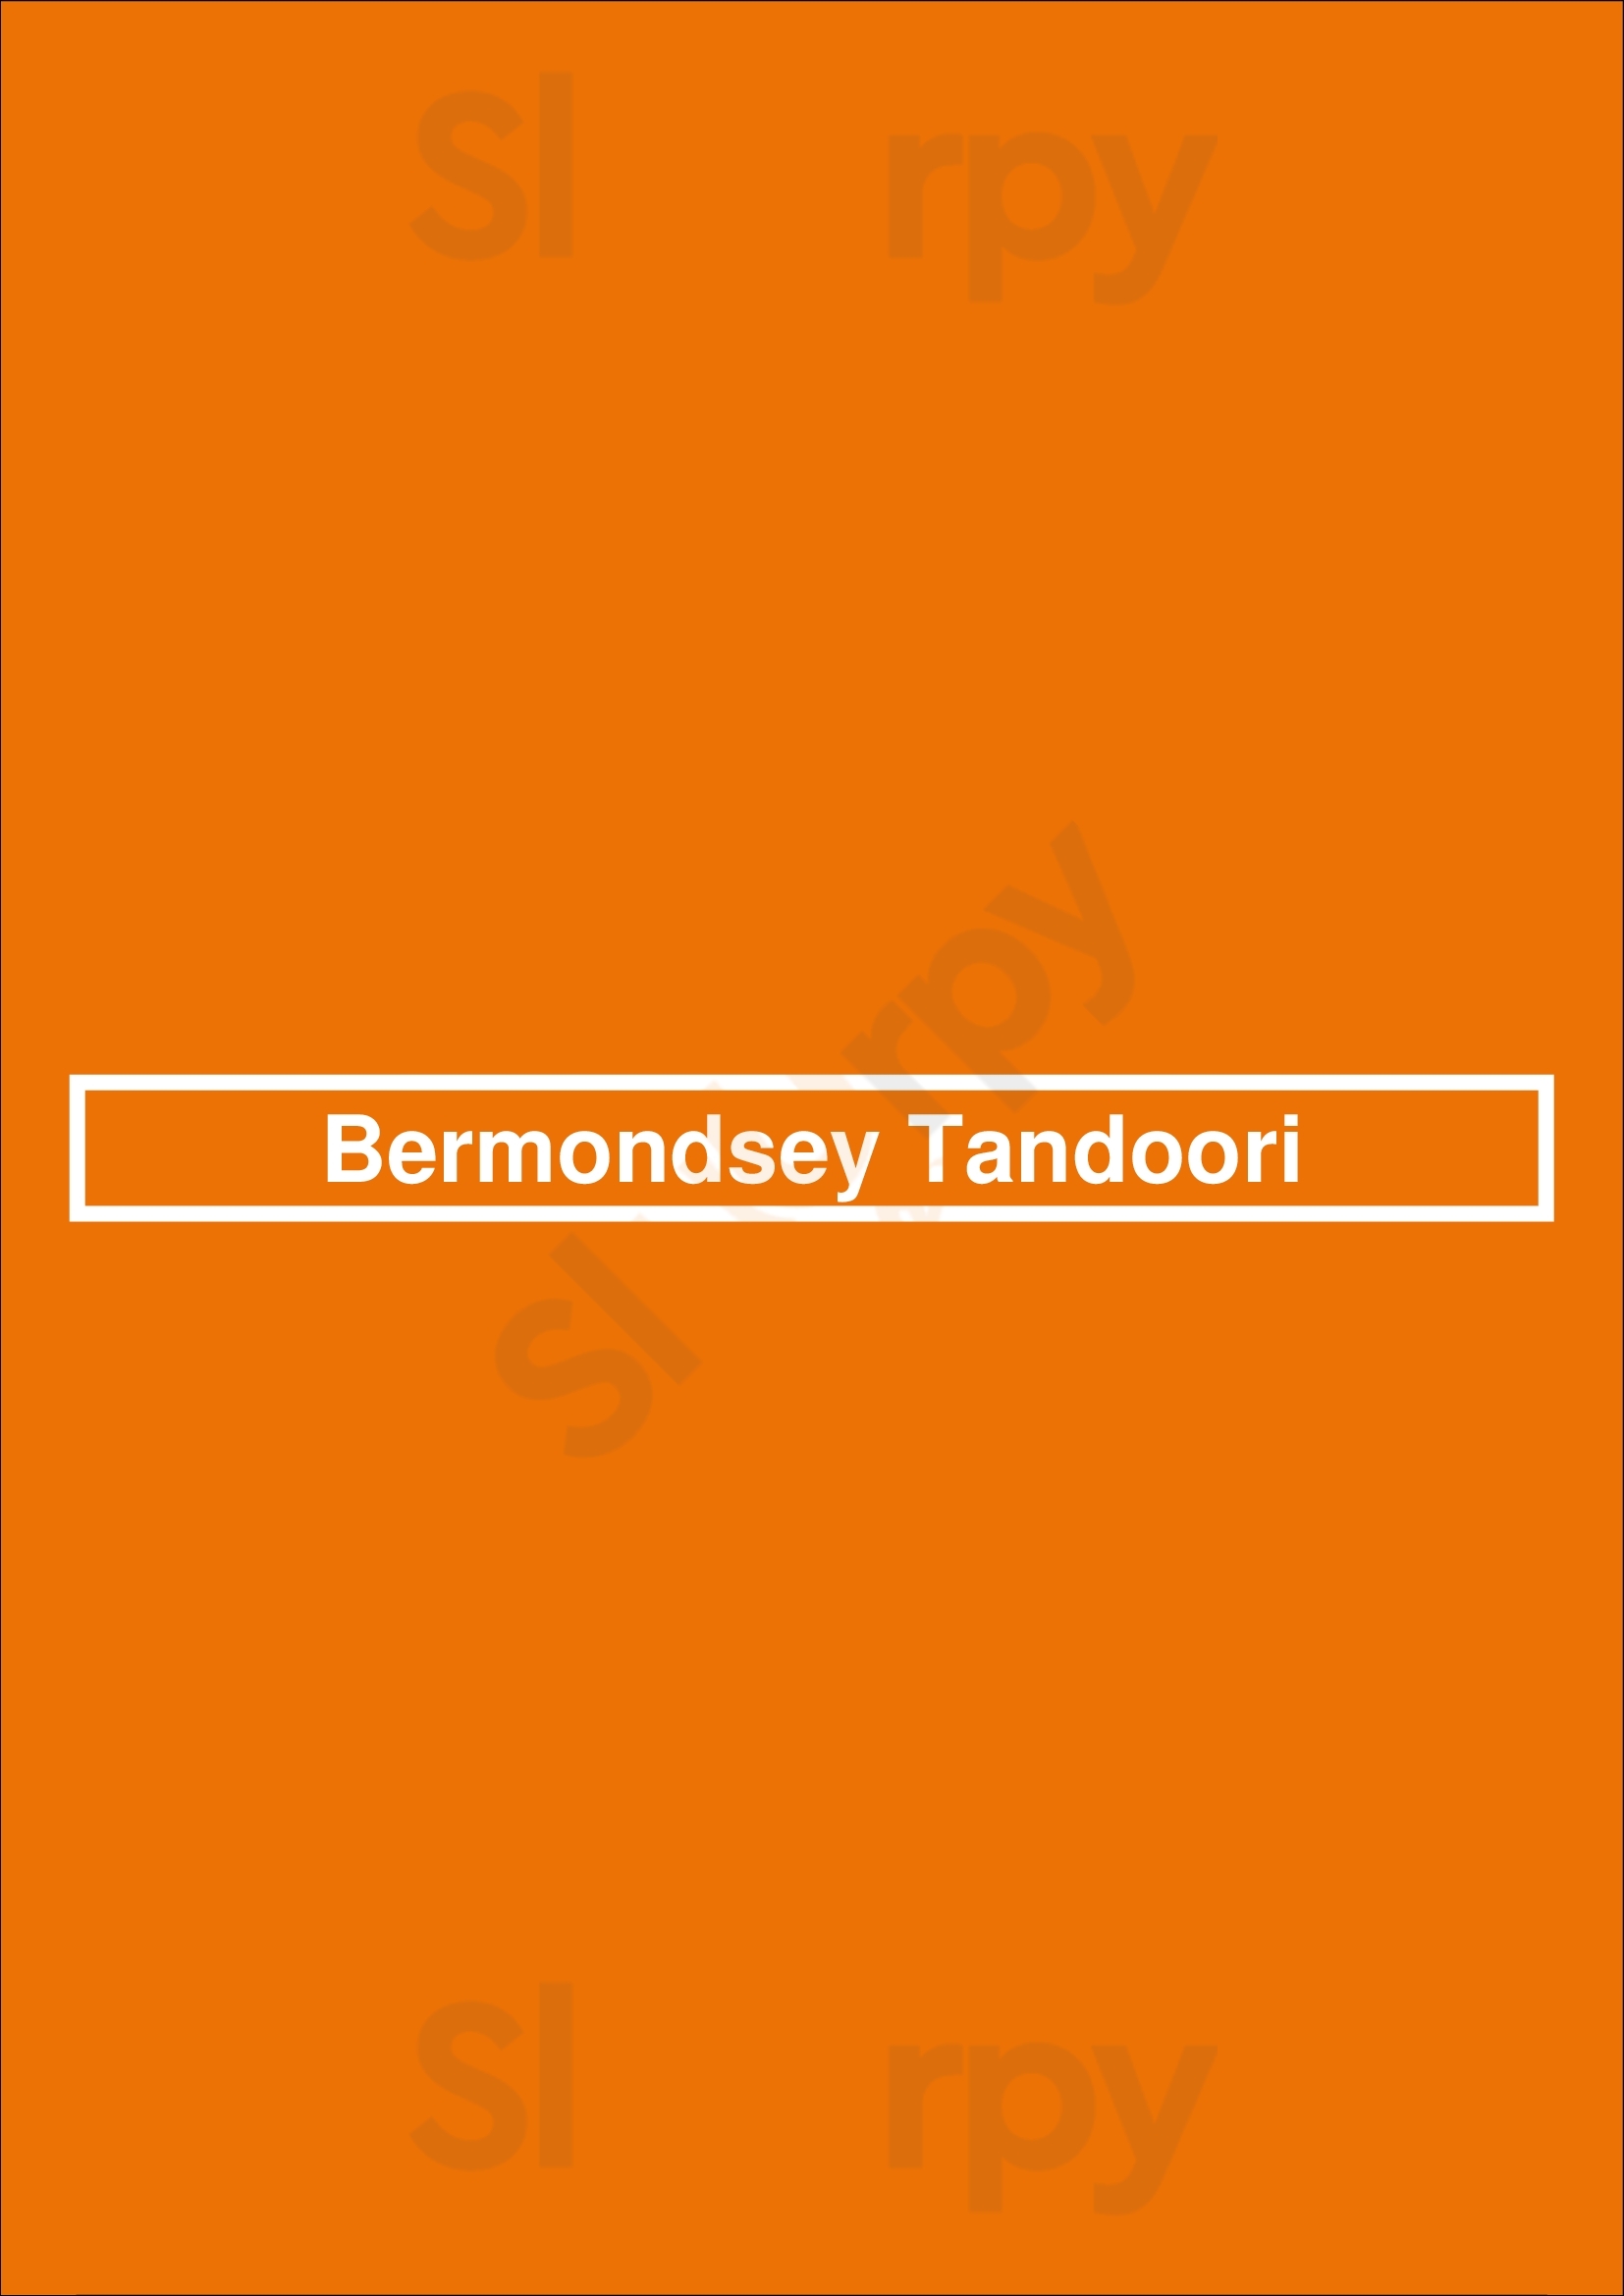 Bermondsey Tandoori London Menu - 1